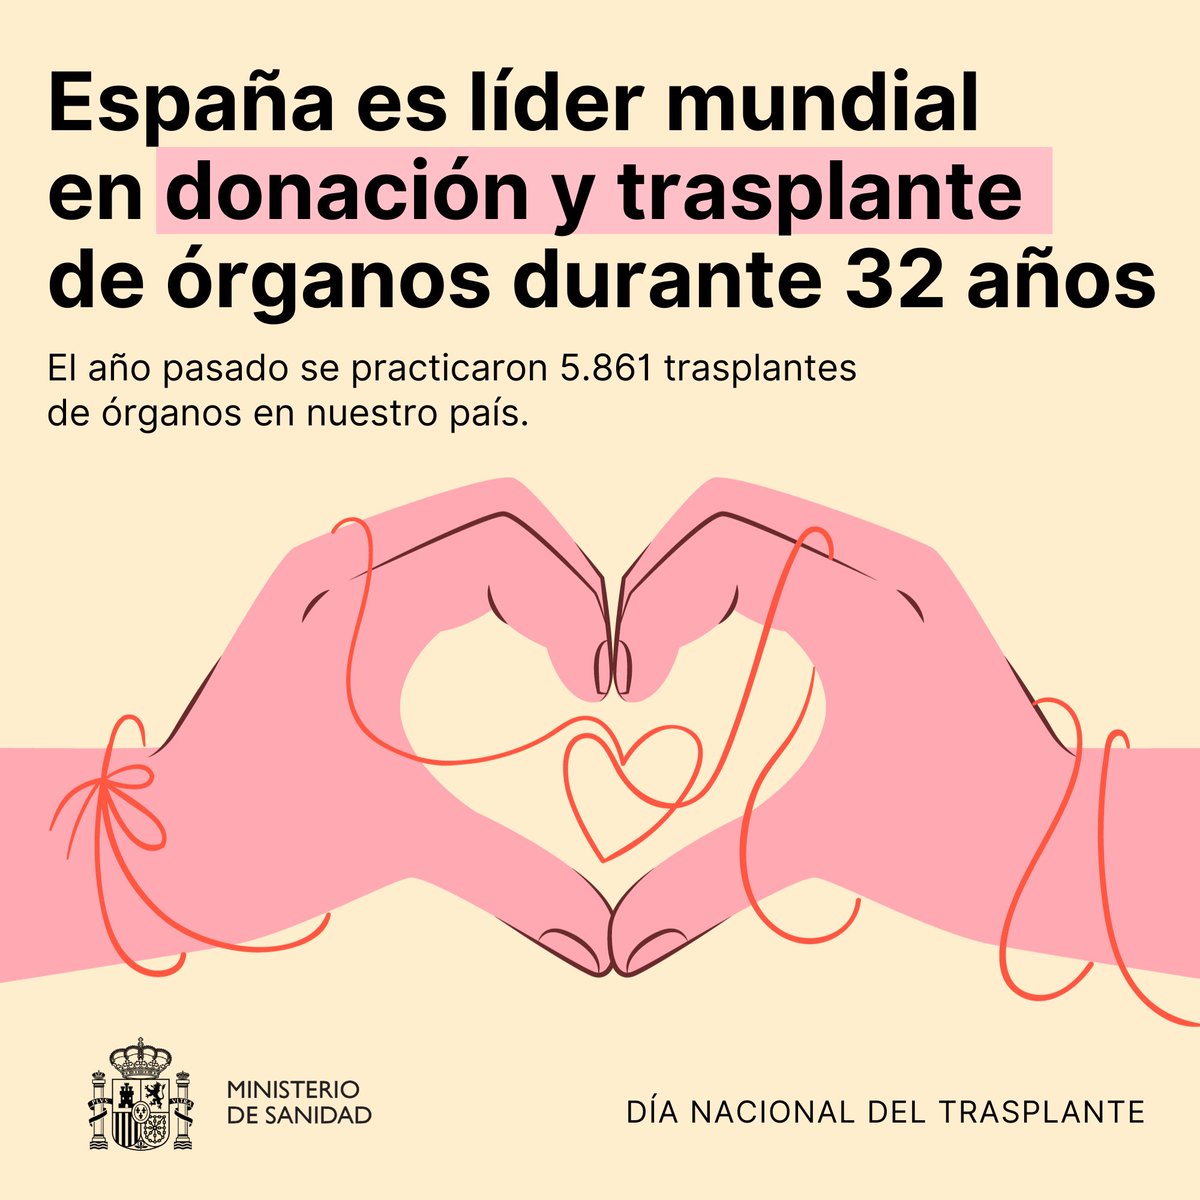 La @ONT_esp registró en 2023 un total de 3.688 trasplantes renales, 1.262 hepáticos, 479 de pulmón, 325 cardíacos, 100 de páncreas y 7 de intestino.

#DíaNacionalDelTrasplante